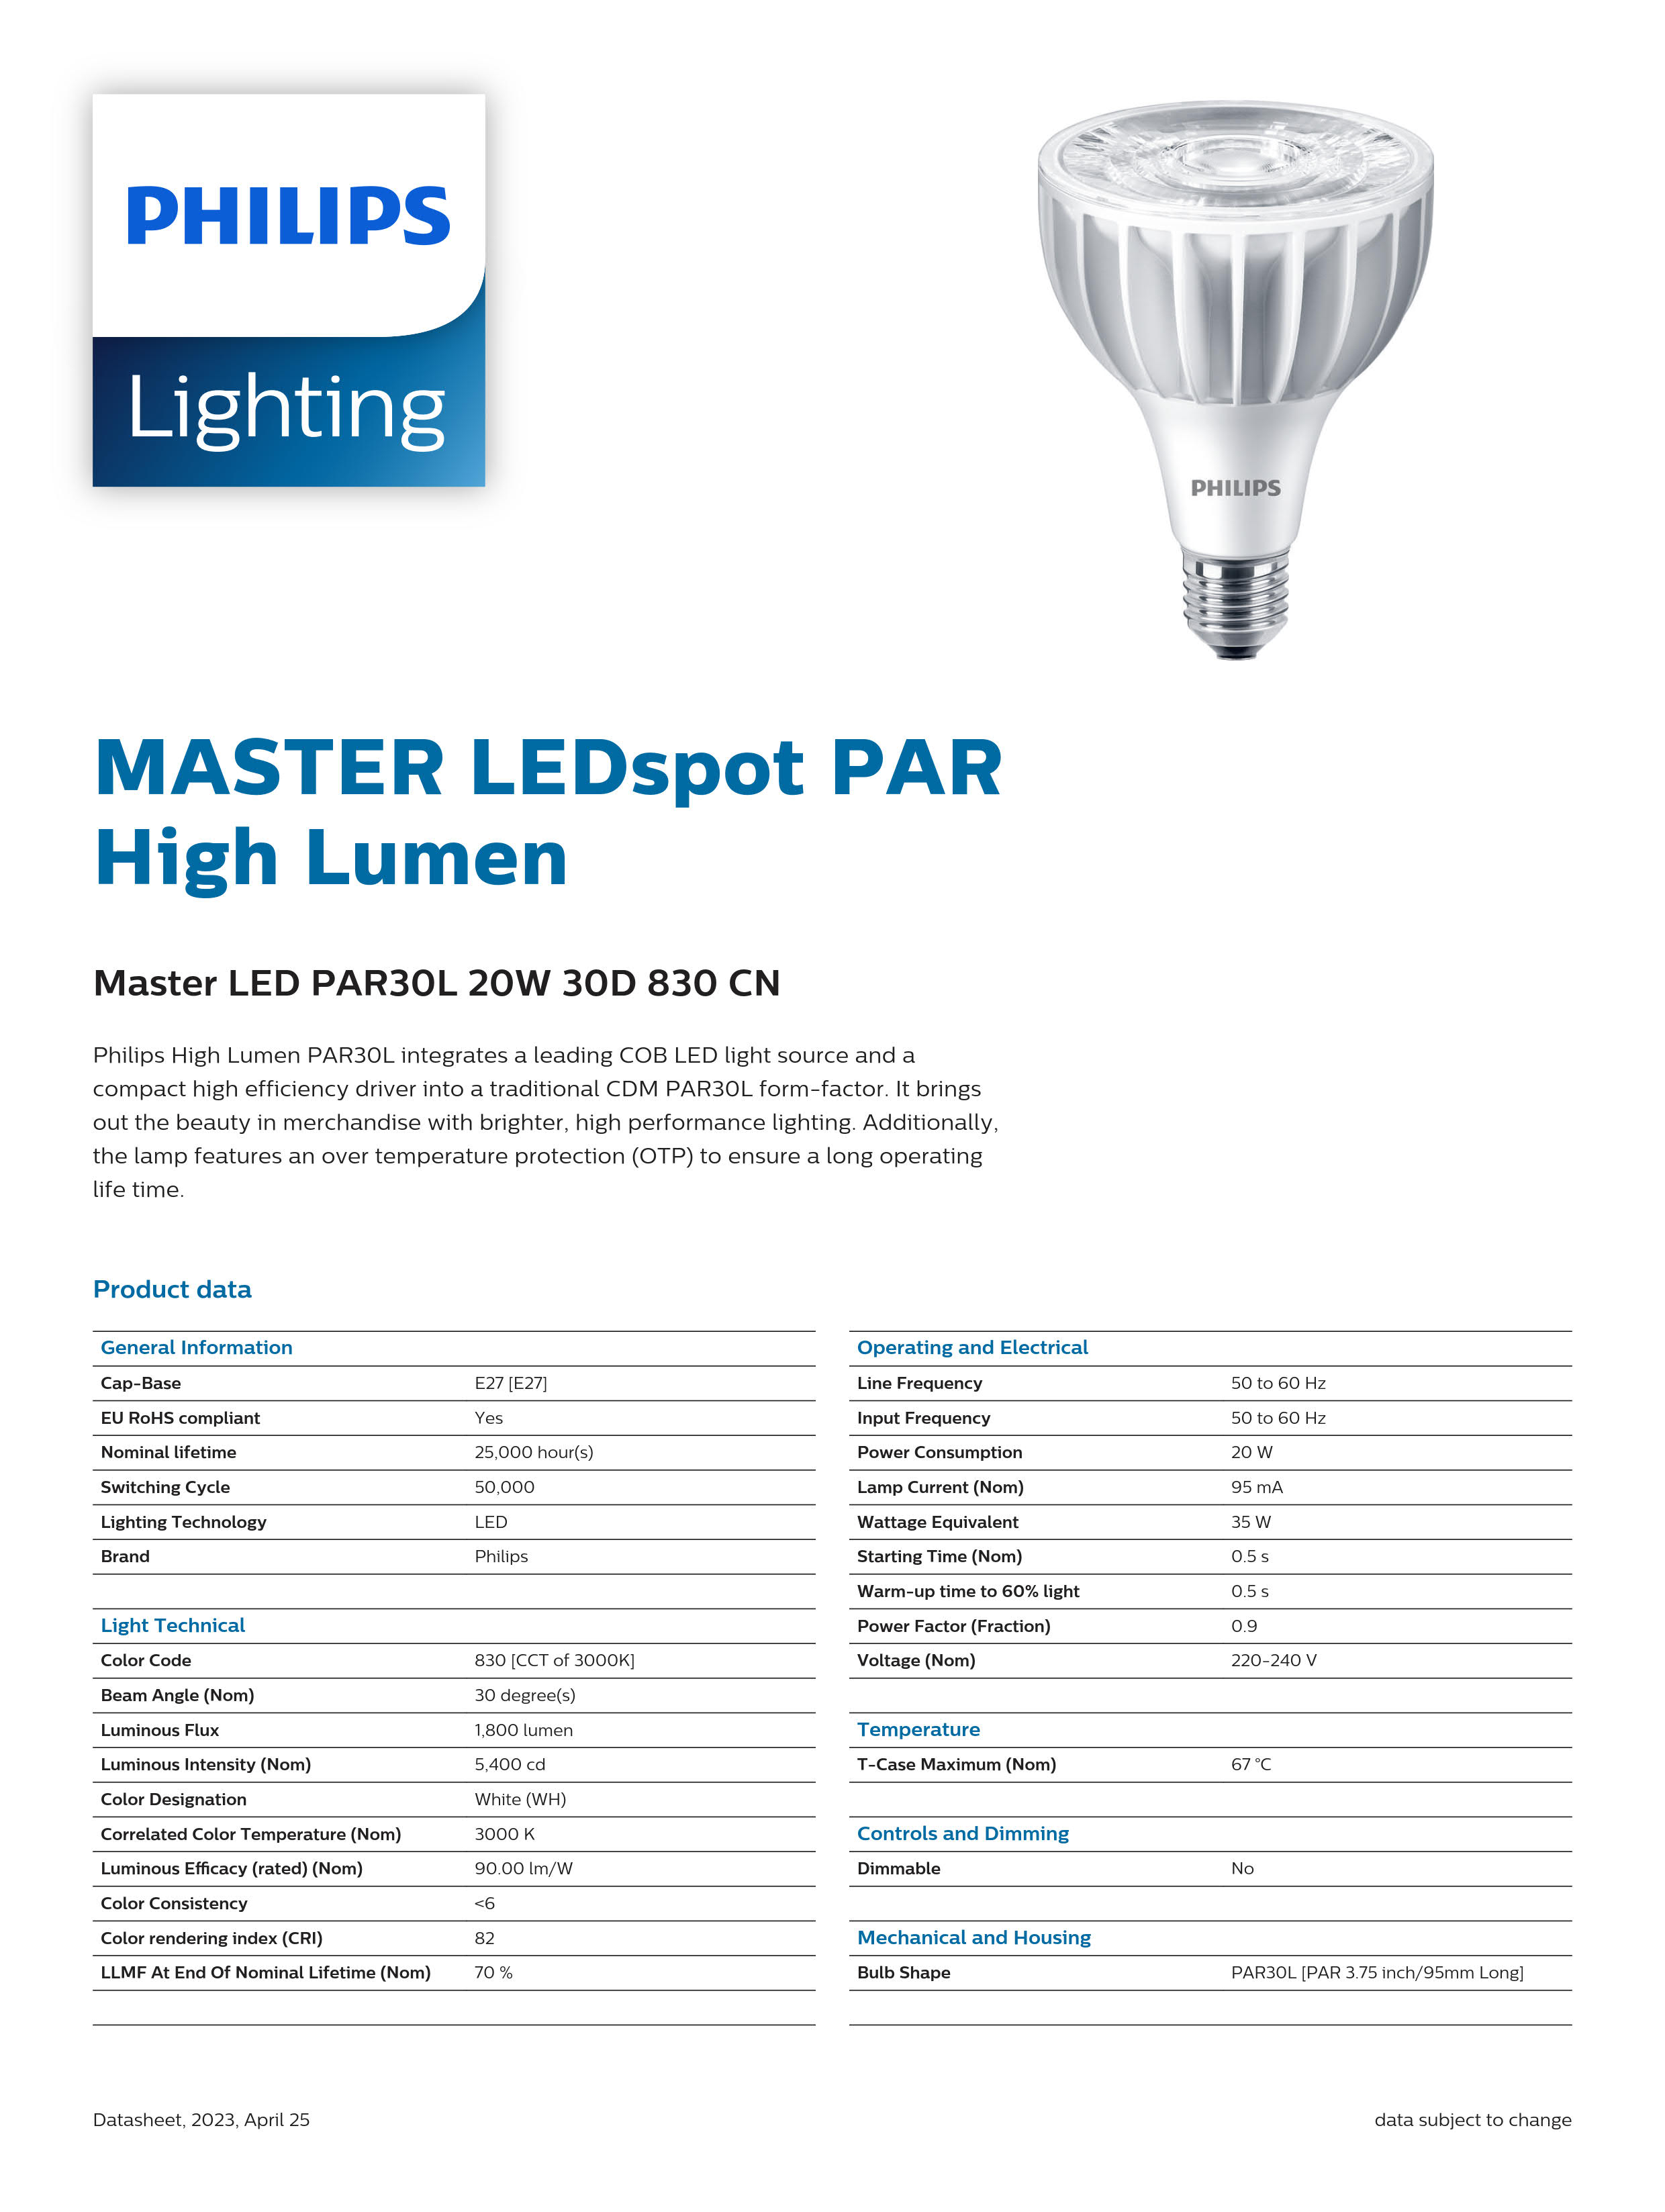 PHILIPS Master LED PAR30L 20W 30D 830 CN 929001354010